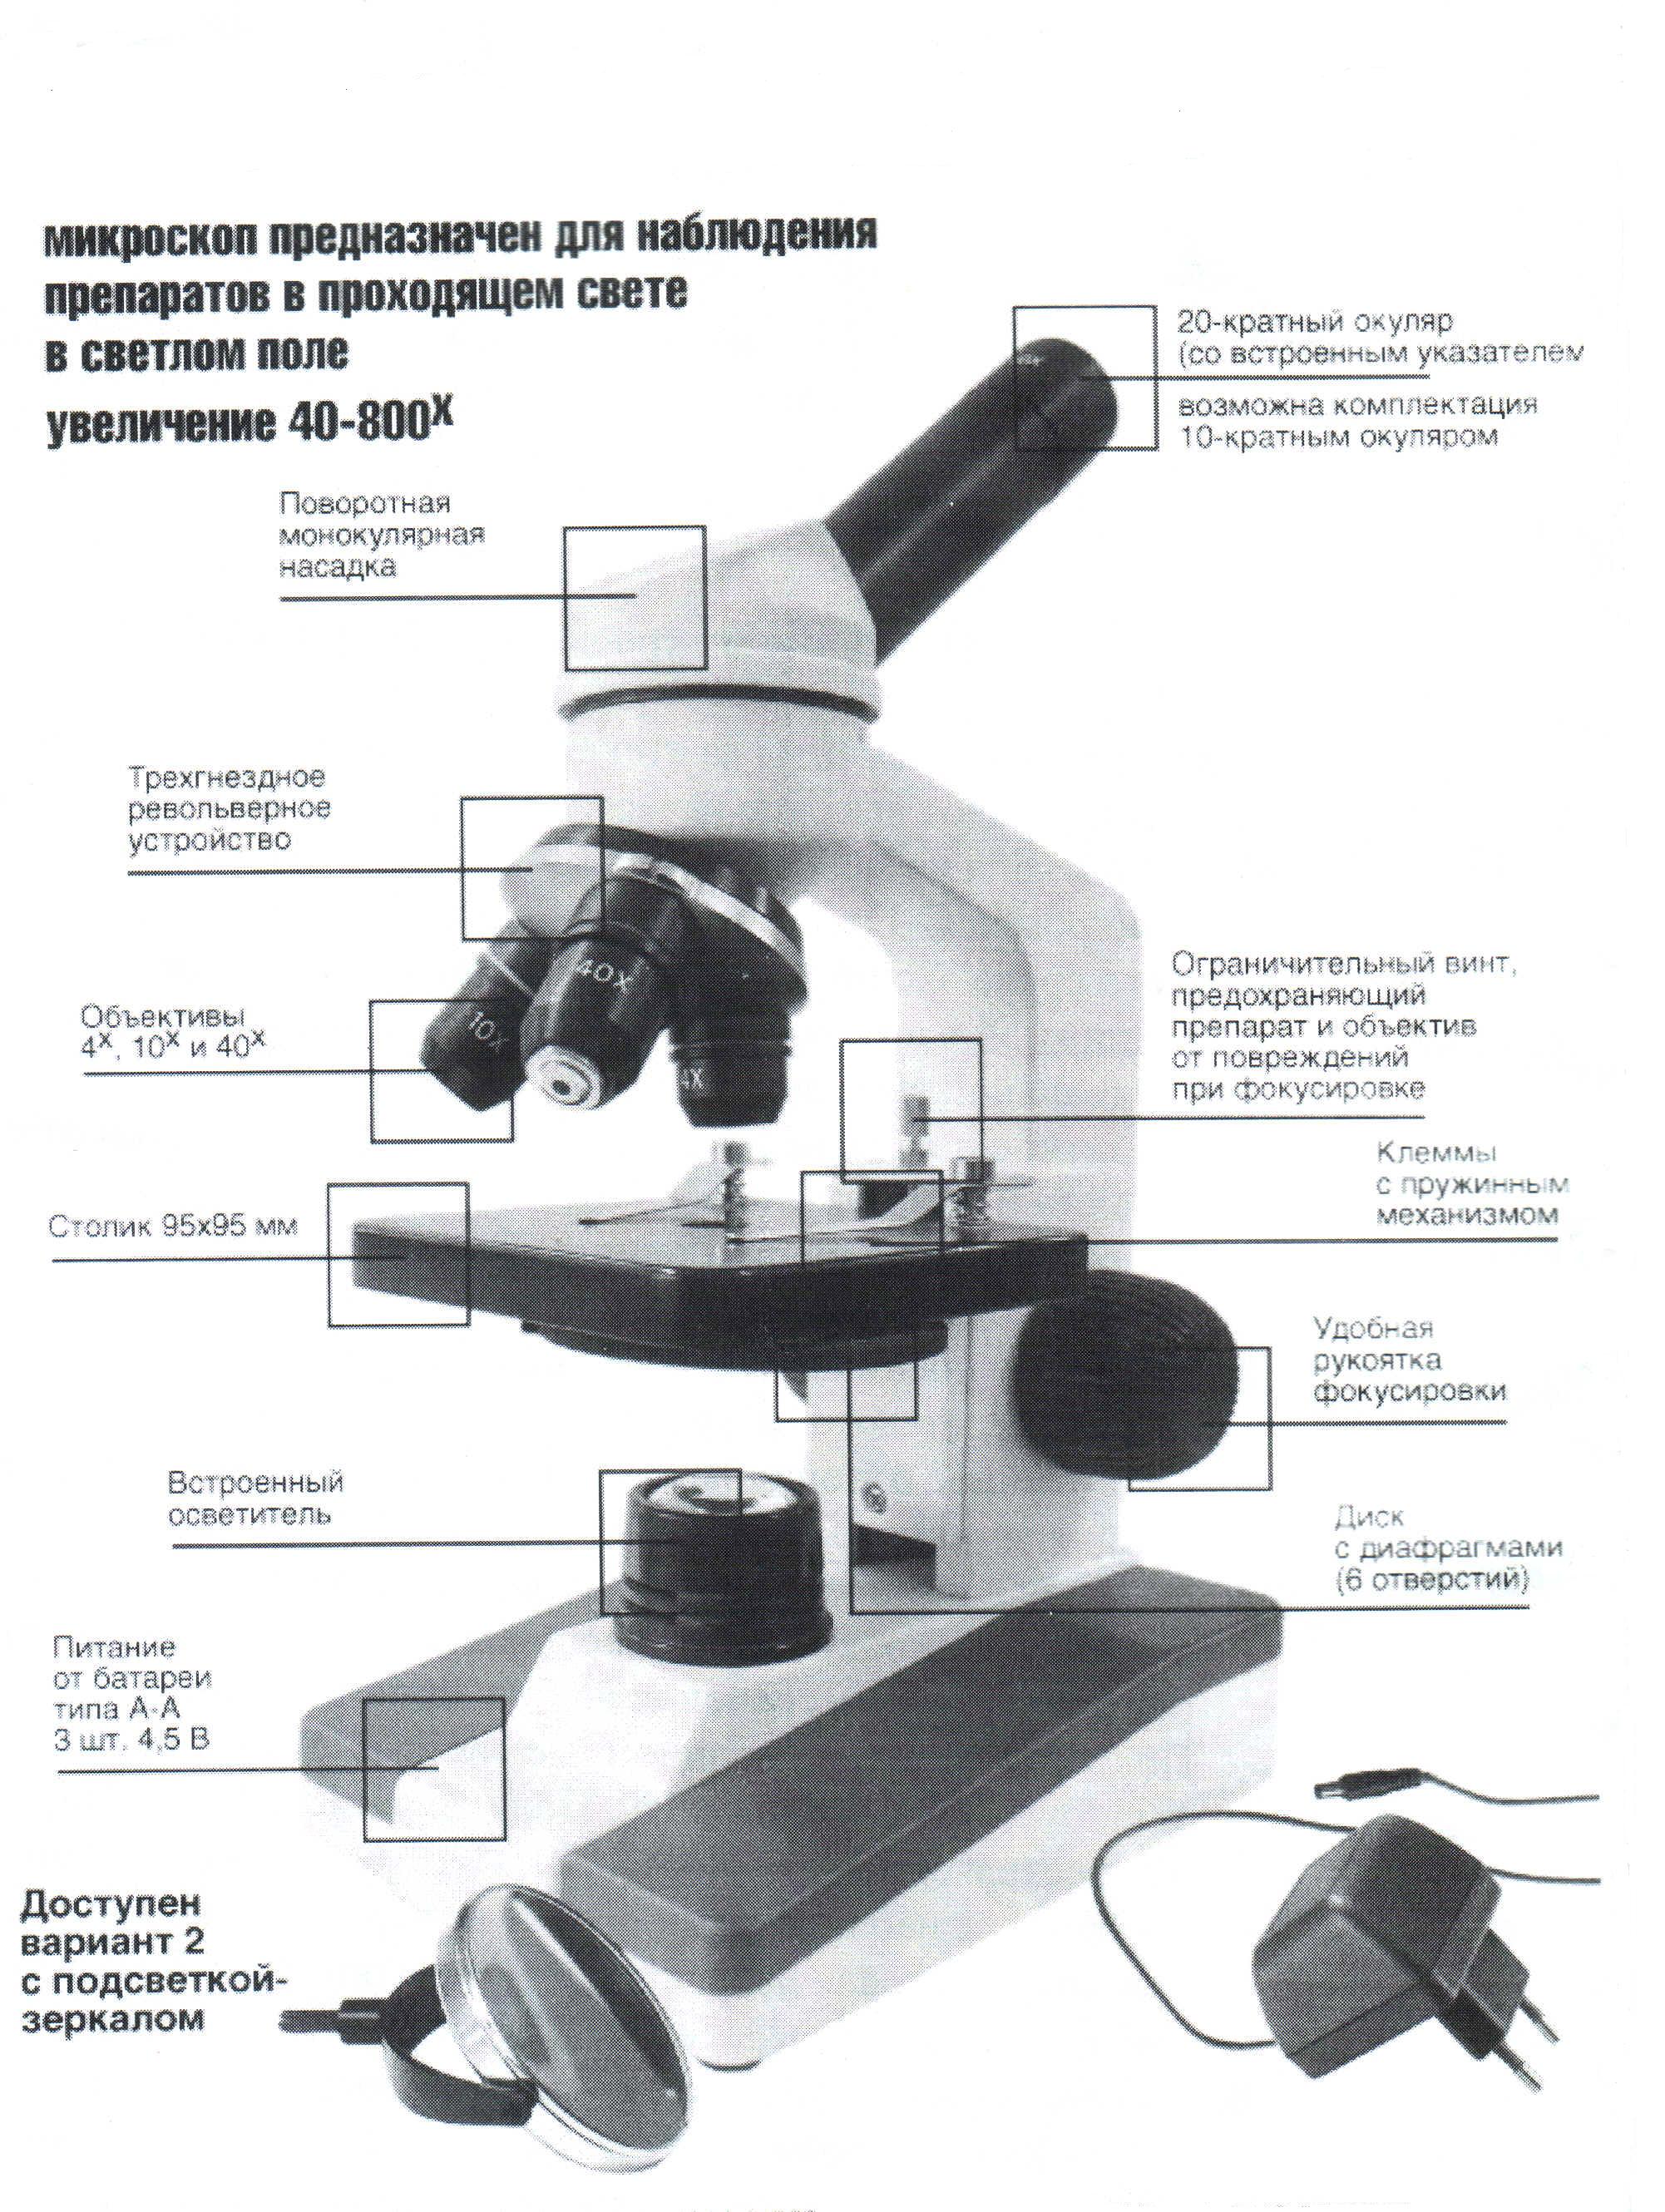 Цифровой микроскоп строение с подписями и названиями. Микроскоп Микромед 5 строение. Строение микроскопа Микромед с-11. Схема цифрового микроскопа 5 класс ВПР биология. Цифровой микроскоп ВПР 5 строение.